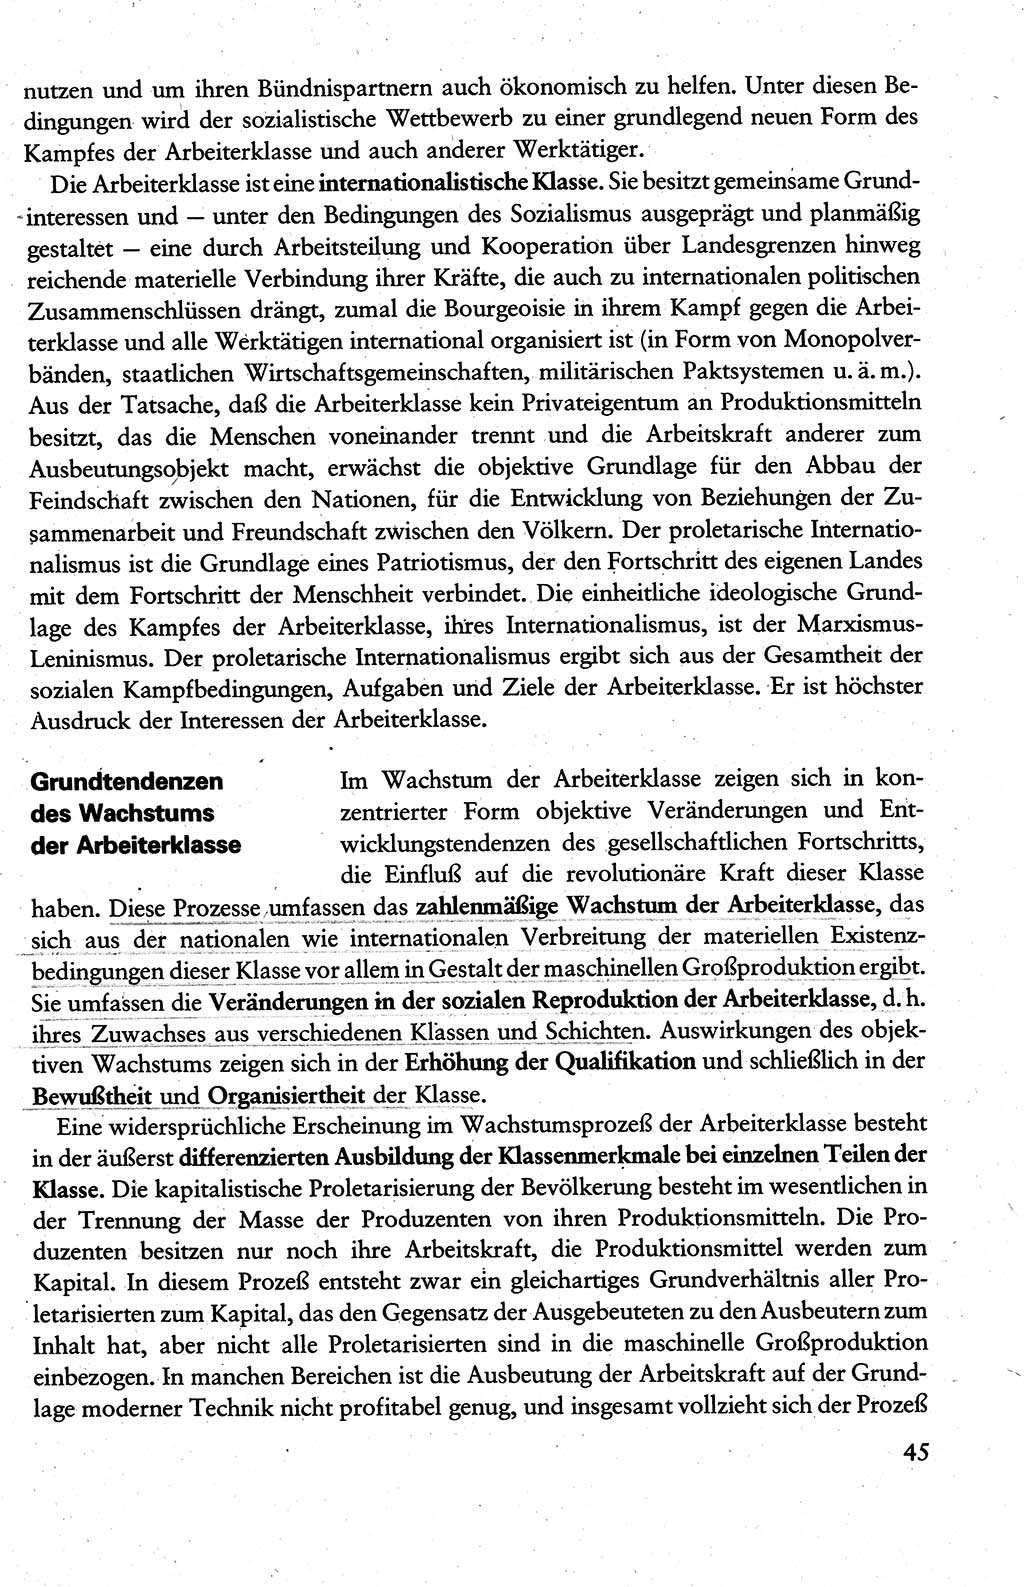 Wissenschaftlicher Kommunismus [Deutsche Demokratische Republik (DDR)], Lehrbuch für das marxistisch-leninistische Grundlagenstudium 1983, Seite 45 (Wiss. Komm. DDR Lb. 1983, S. 45)